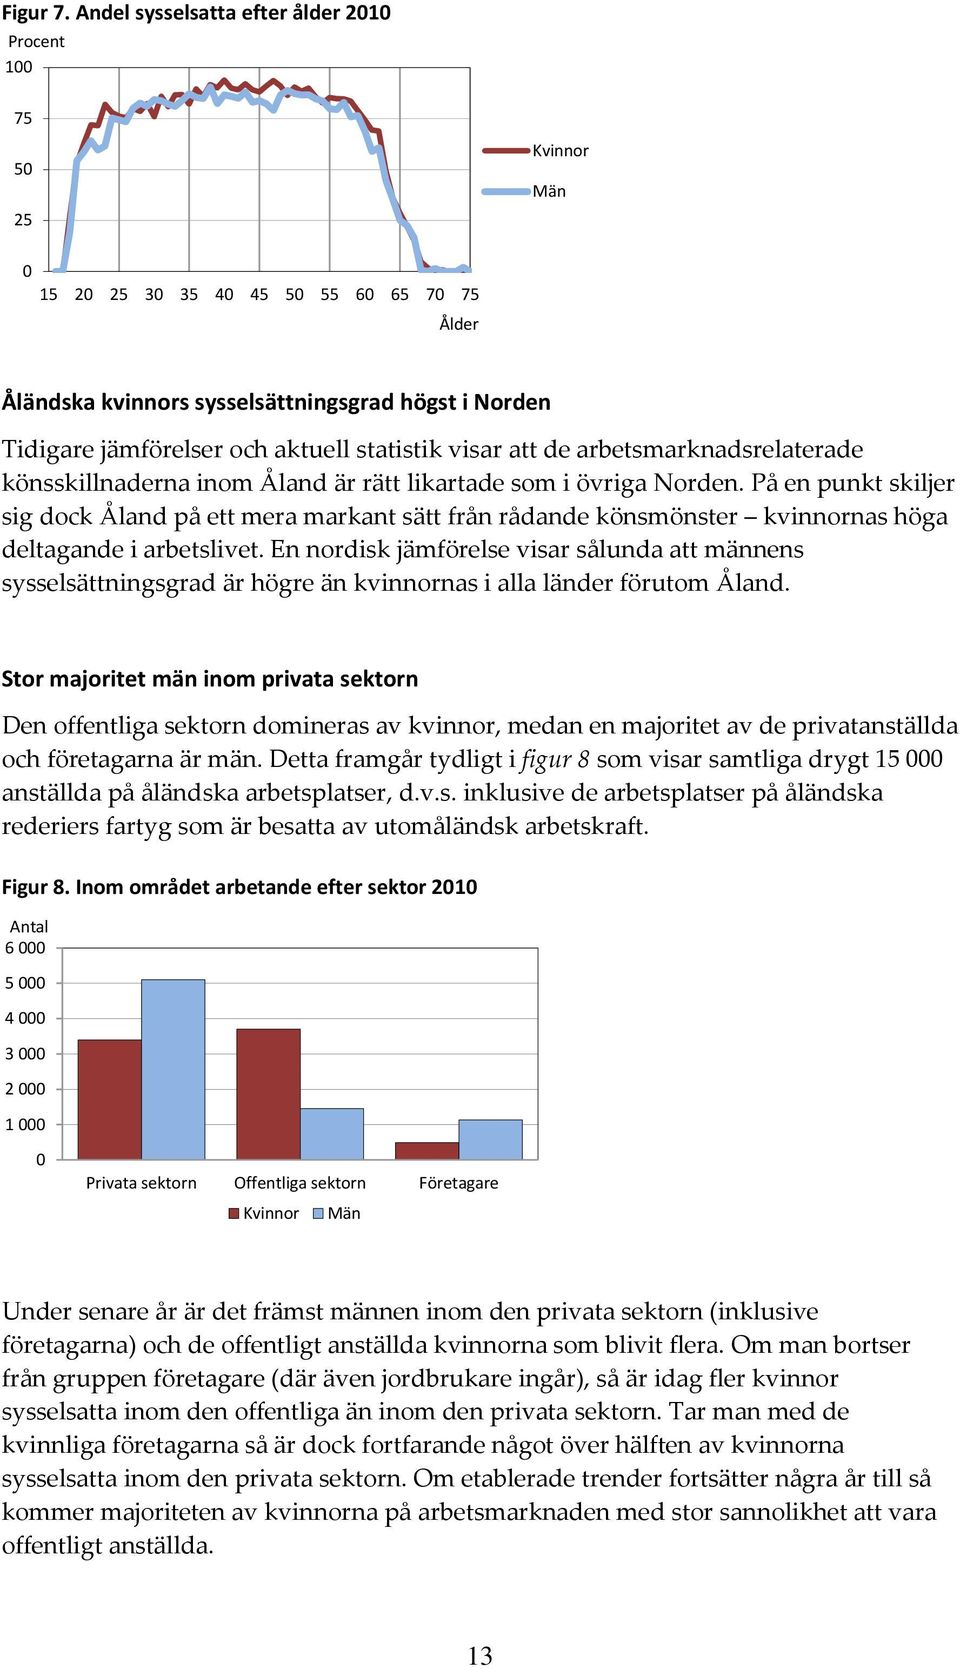 att de arbetsmarknadsrelaterade könsskillnaderna inom Åland är rätt likartade som i övriga Norden.